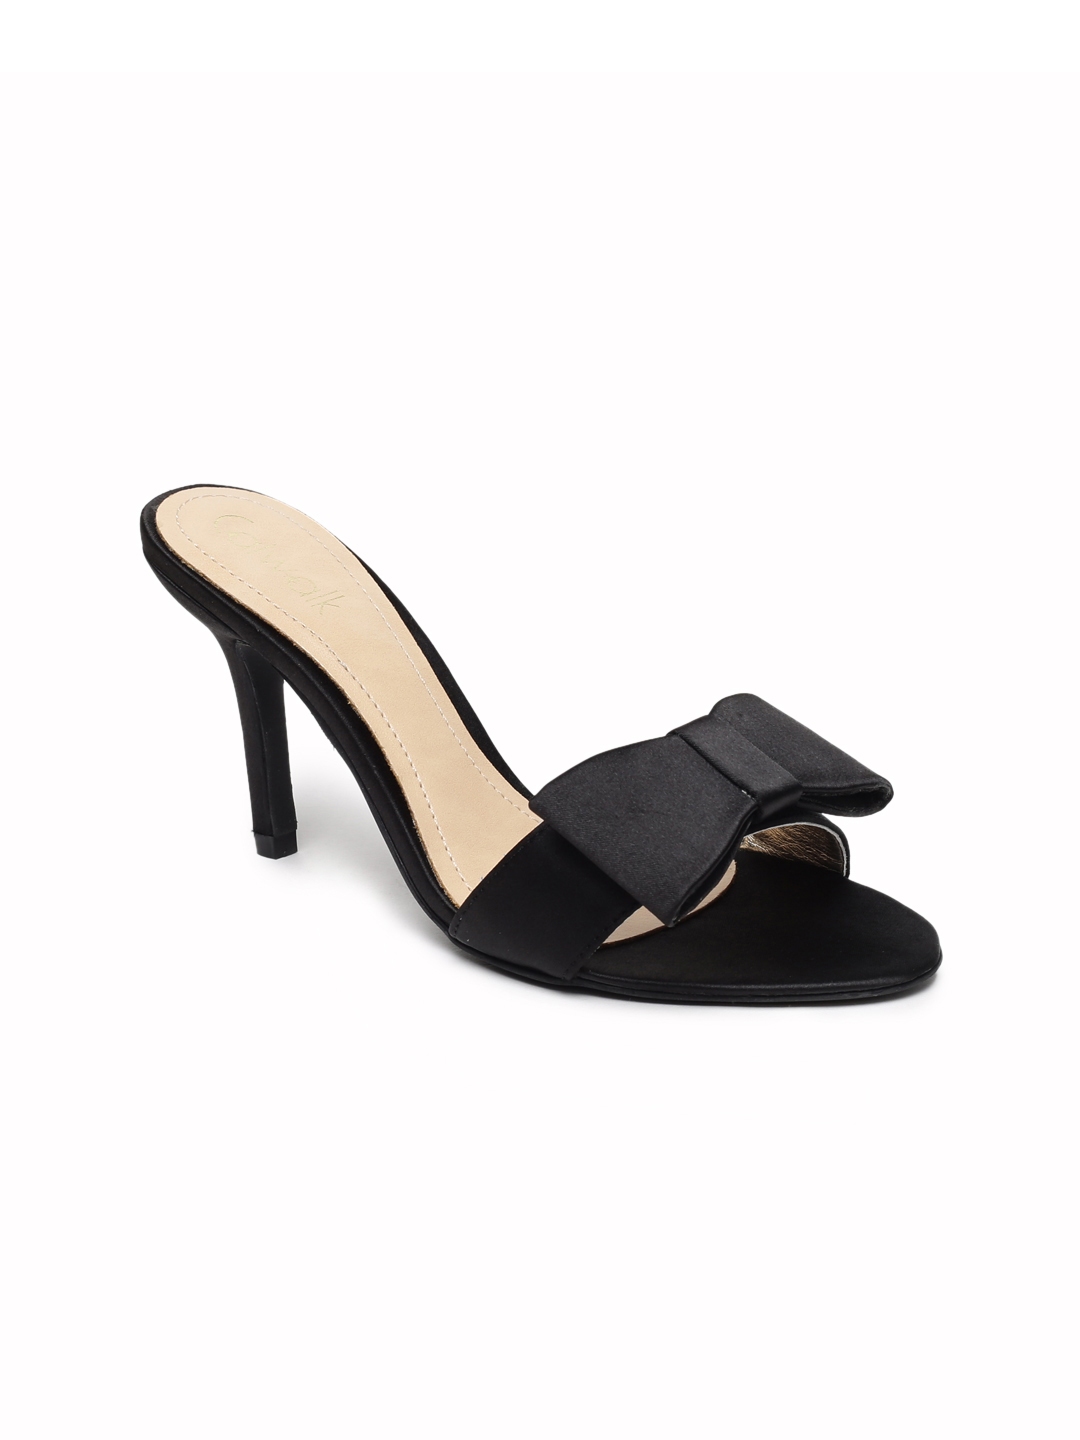 Buy Catwalk Women Black Solid Heels - Heels for Women 7585671 | Myntra